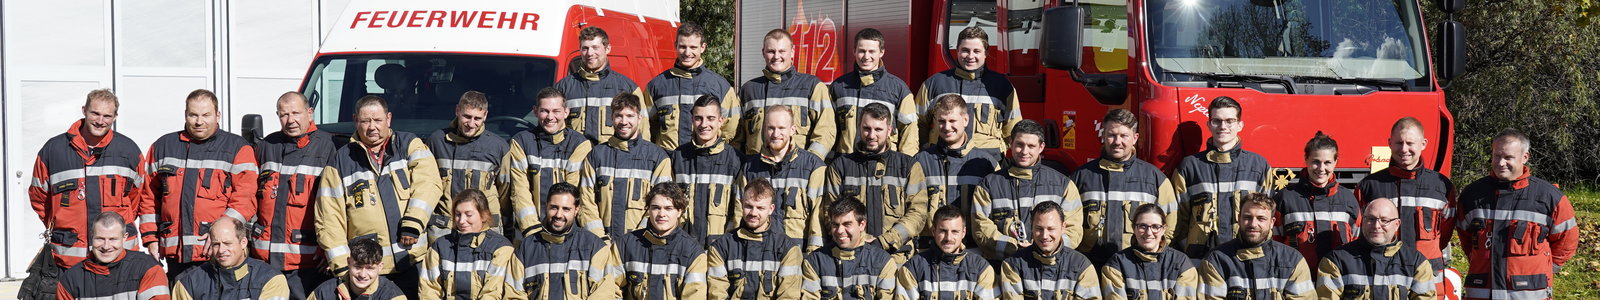 Manschaftbild der Feuerwehr Biel-Benken aus dem Jahr 2022.